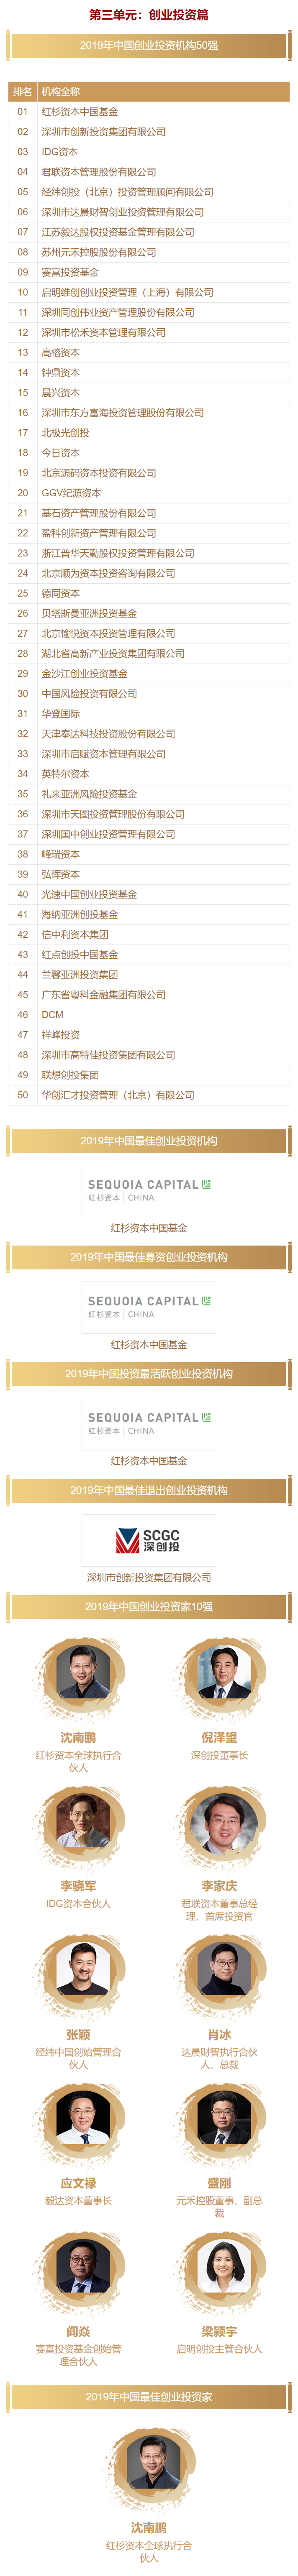 清科-2019年中国VC投资排名